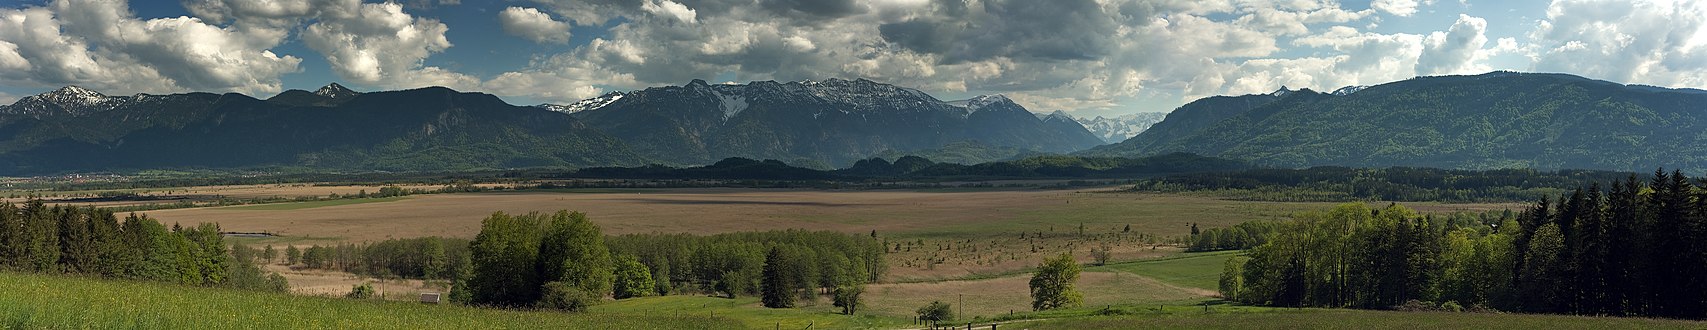 Ein Blick nach Süden auf das Murnauer Moos, Estergebirge mit Hohe Kisten und Kistenkar, Loisachtal und die Ammergauer Alpen vom Hang des Murnauer Molassezugs